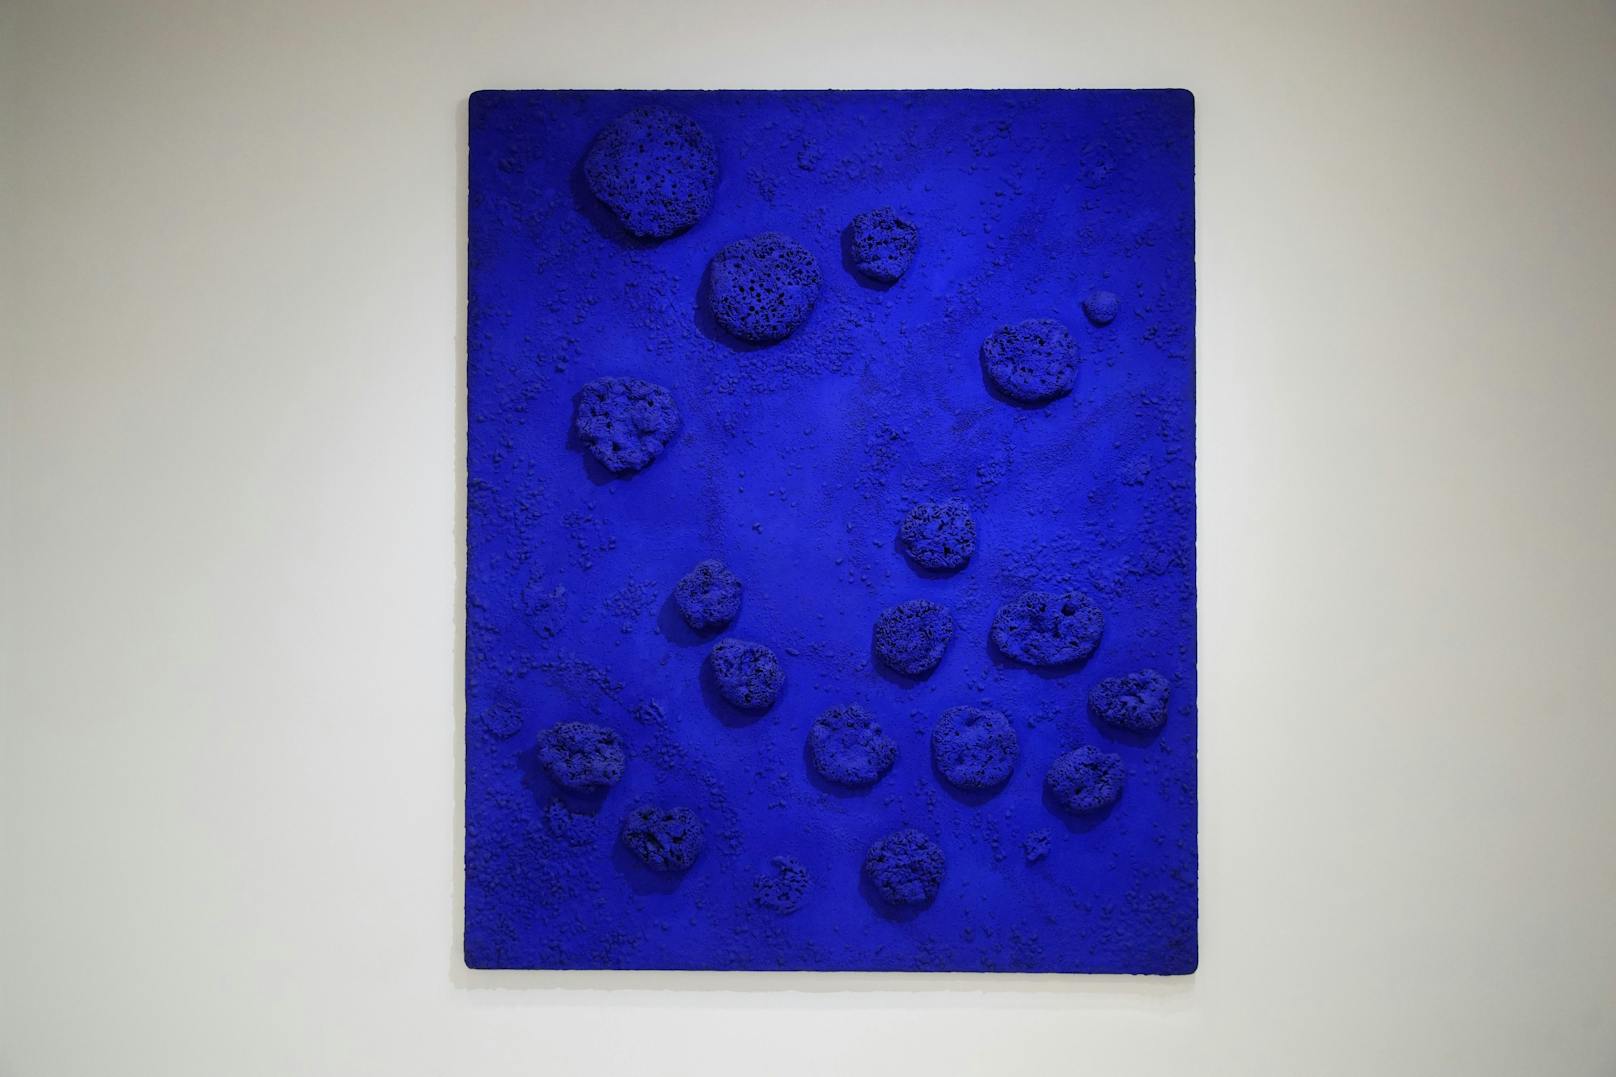 "RE 1 (Relief eponge bleu" von Yves Klein, 1958